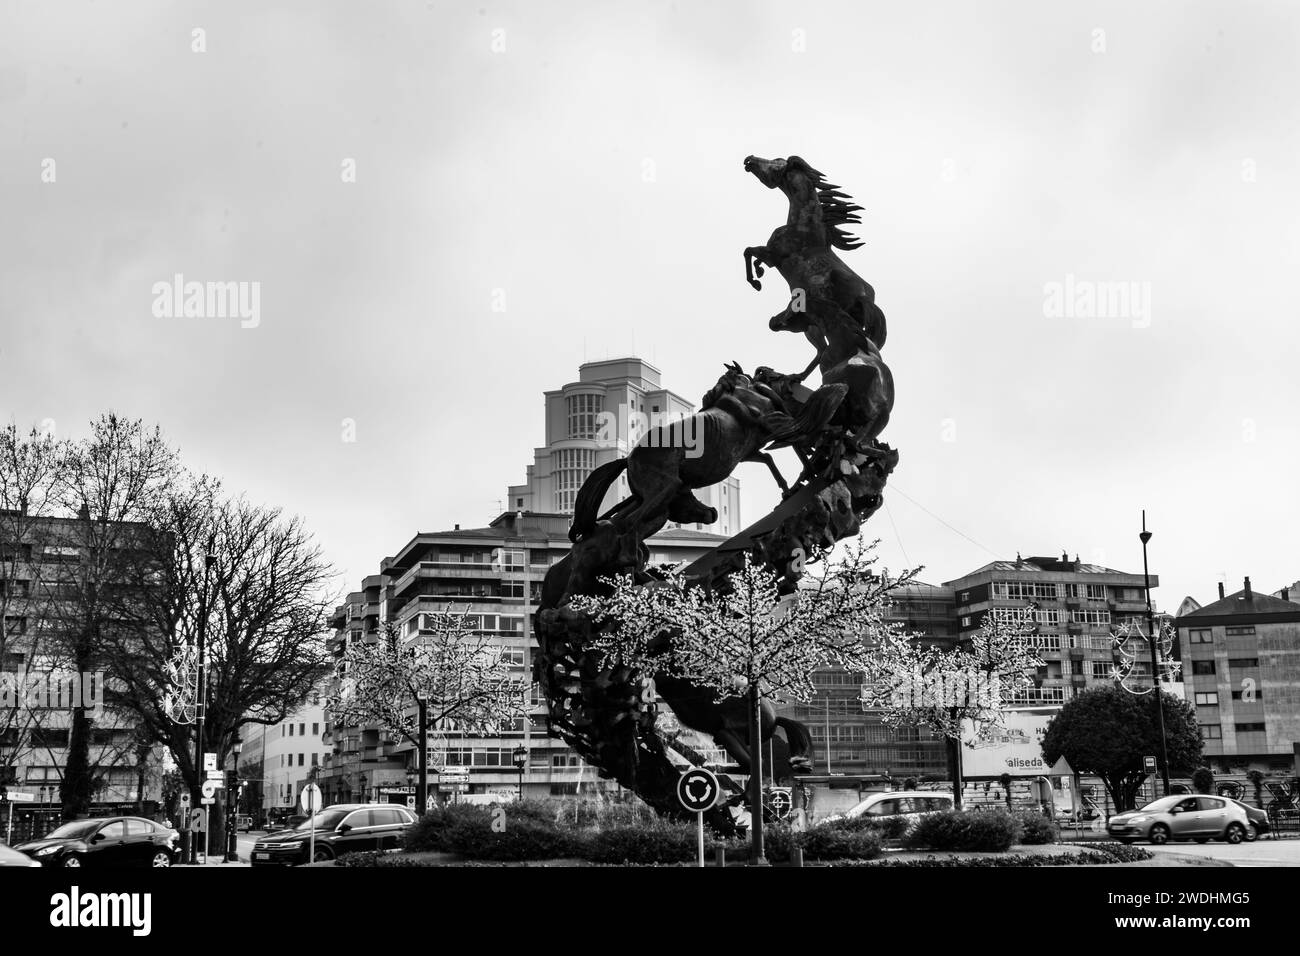 VIGO, ESPAGNE-30 décembre 2021 : groupe sculptural en bronze noir forme une sorte de spirale métallique ascendante qui atteint 18 mètres de hauteur Banque D'Images